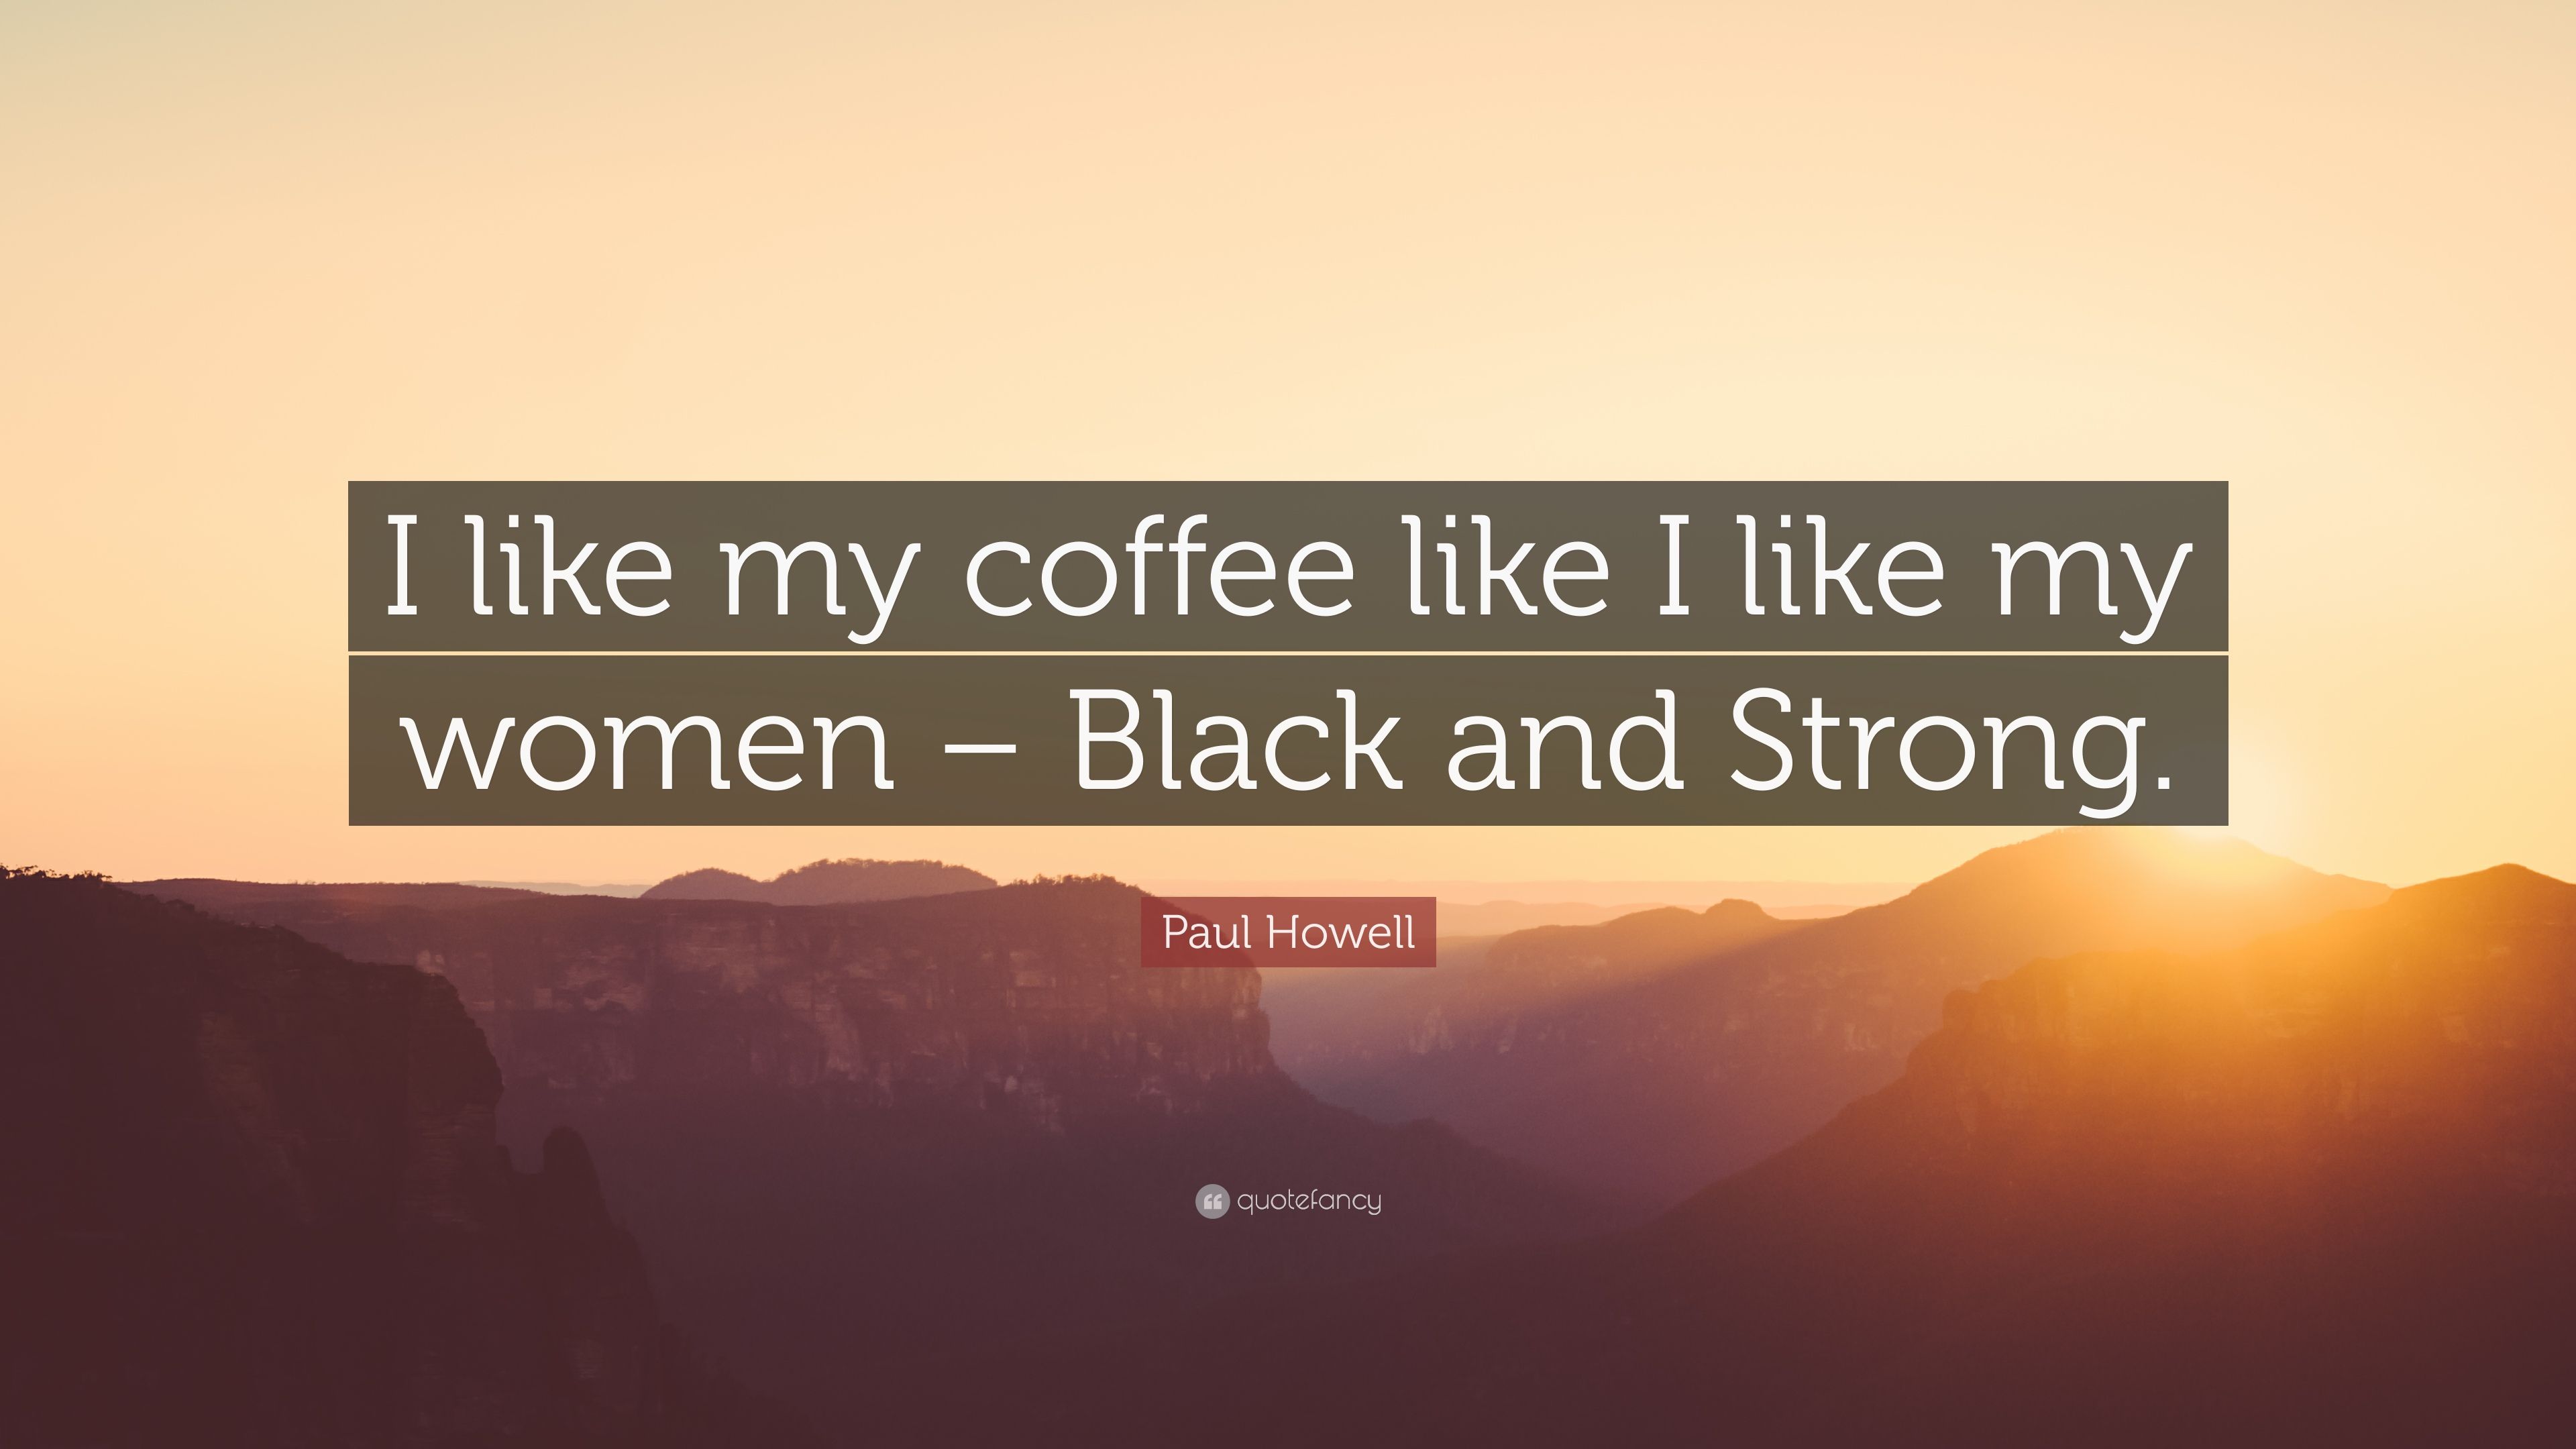 Paul Howell Quote: “I like my coffee like I like my women